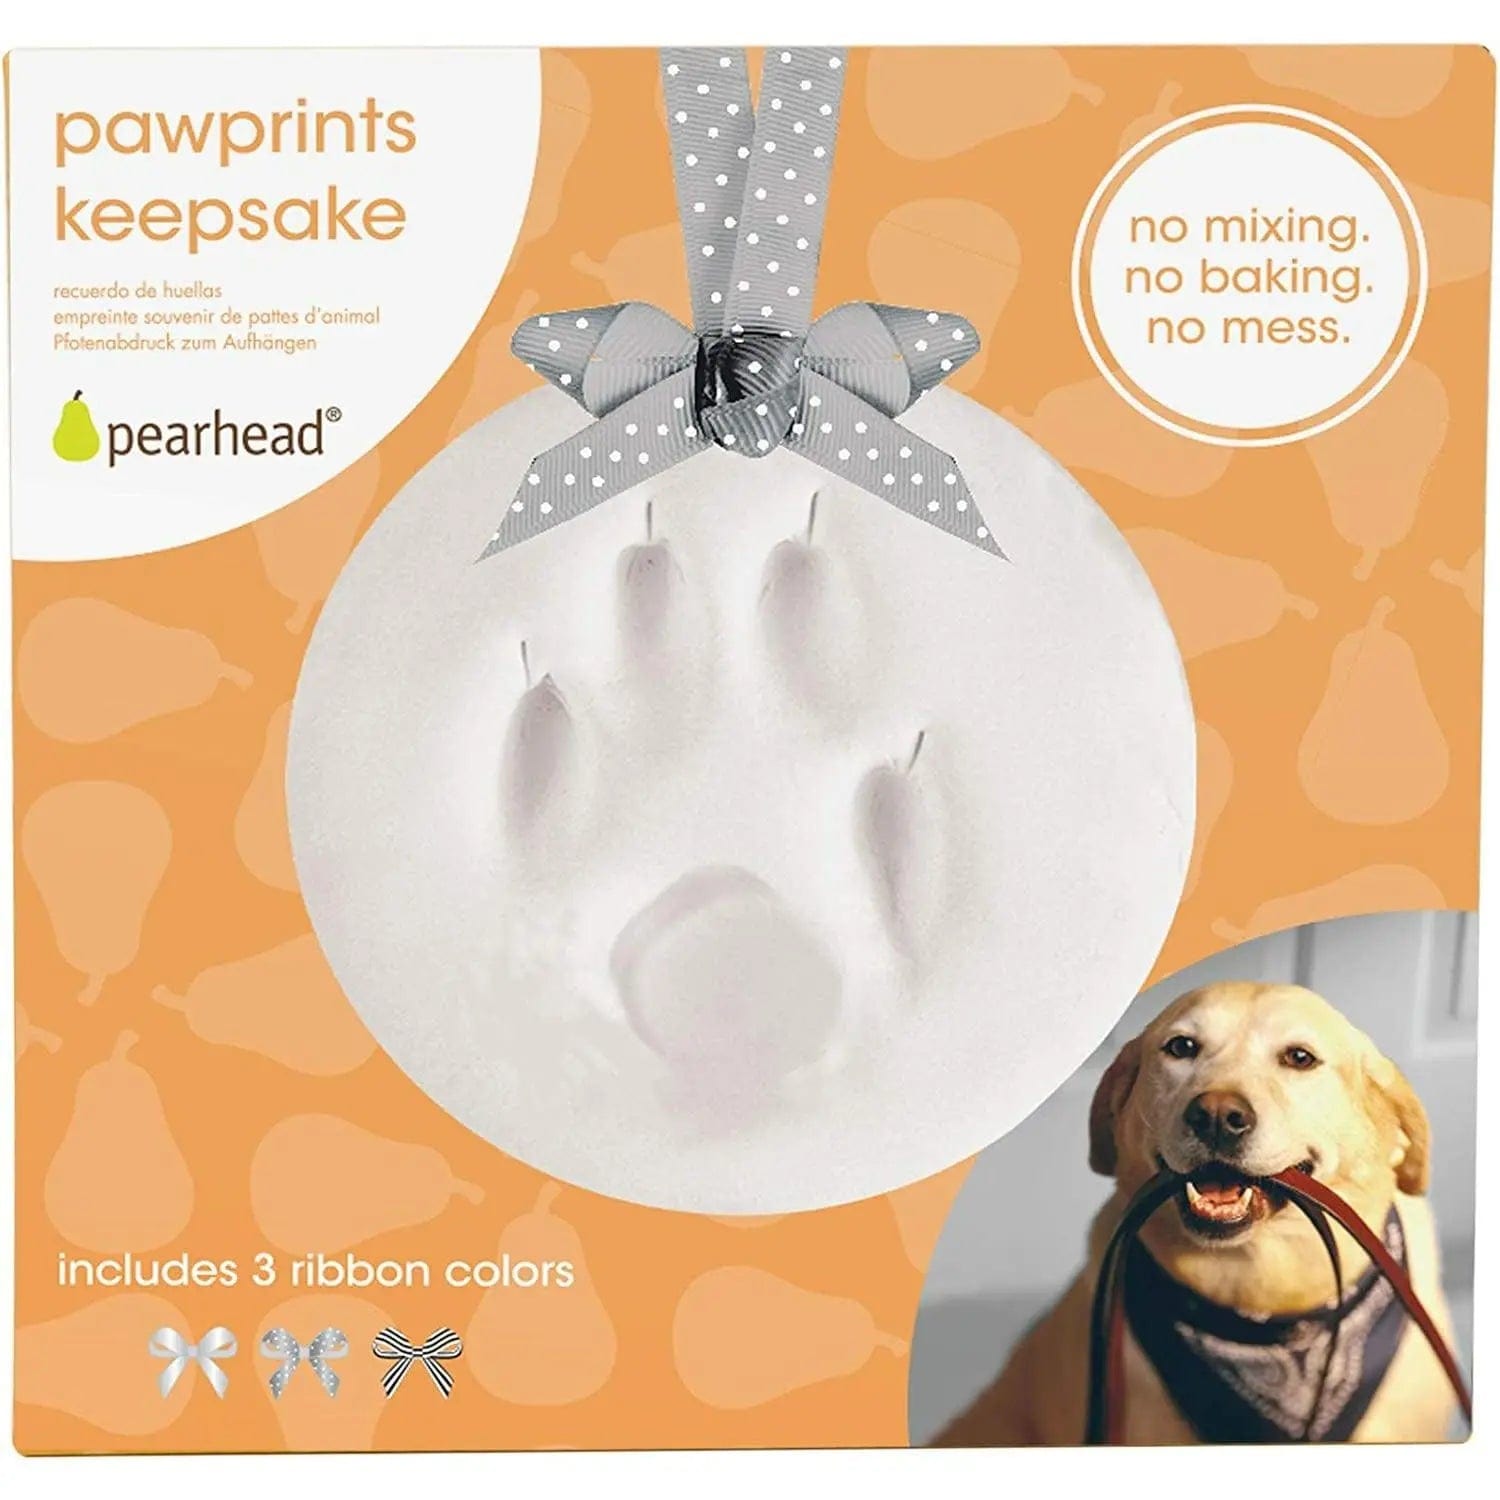 Ensemble d'empreintes de pattes de chien et de chat, cadre photo en bois,  plâtre 3D 